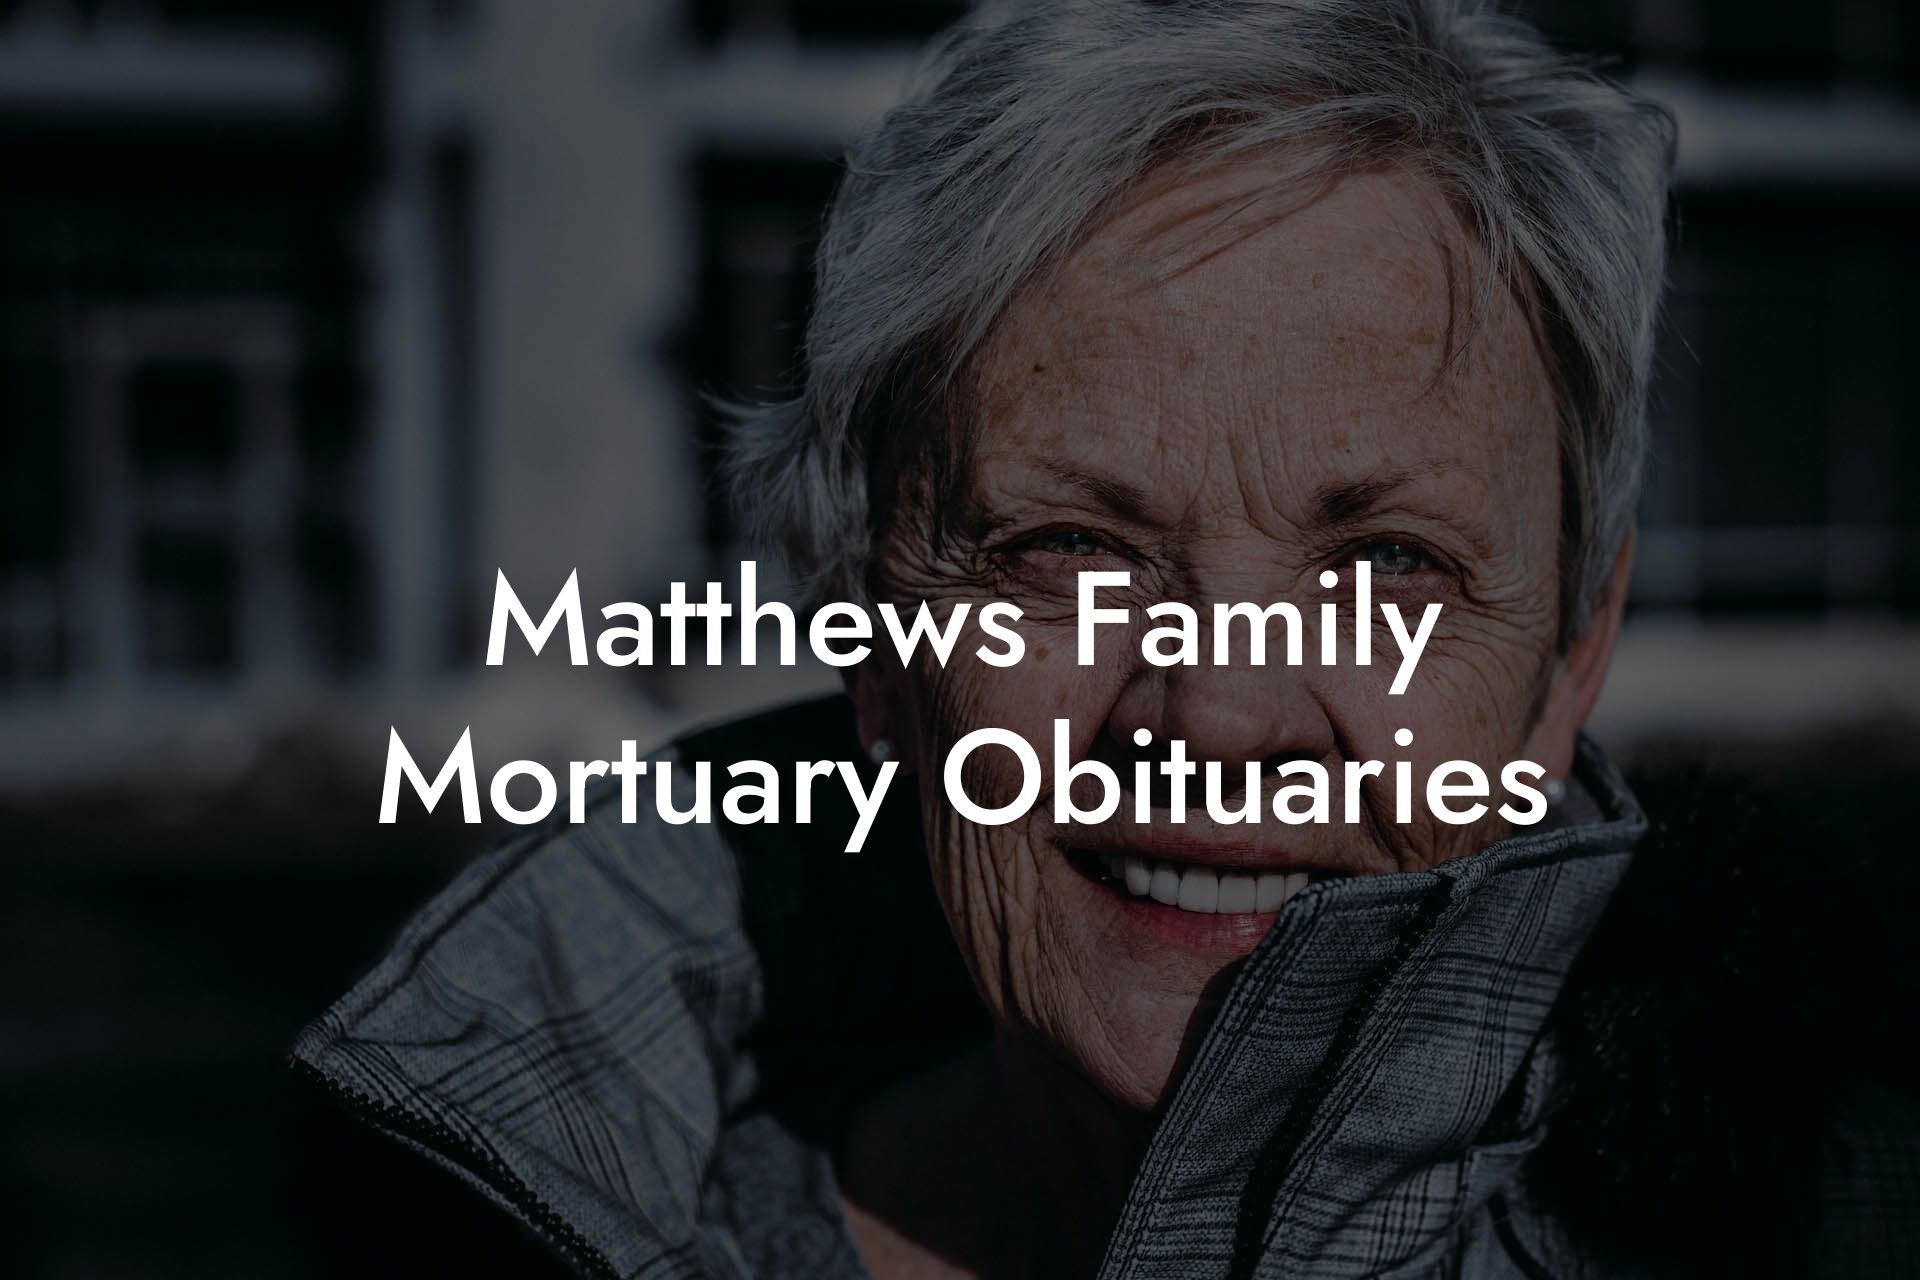 Matthews Family Mortuary Obituaries